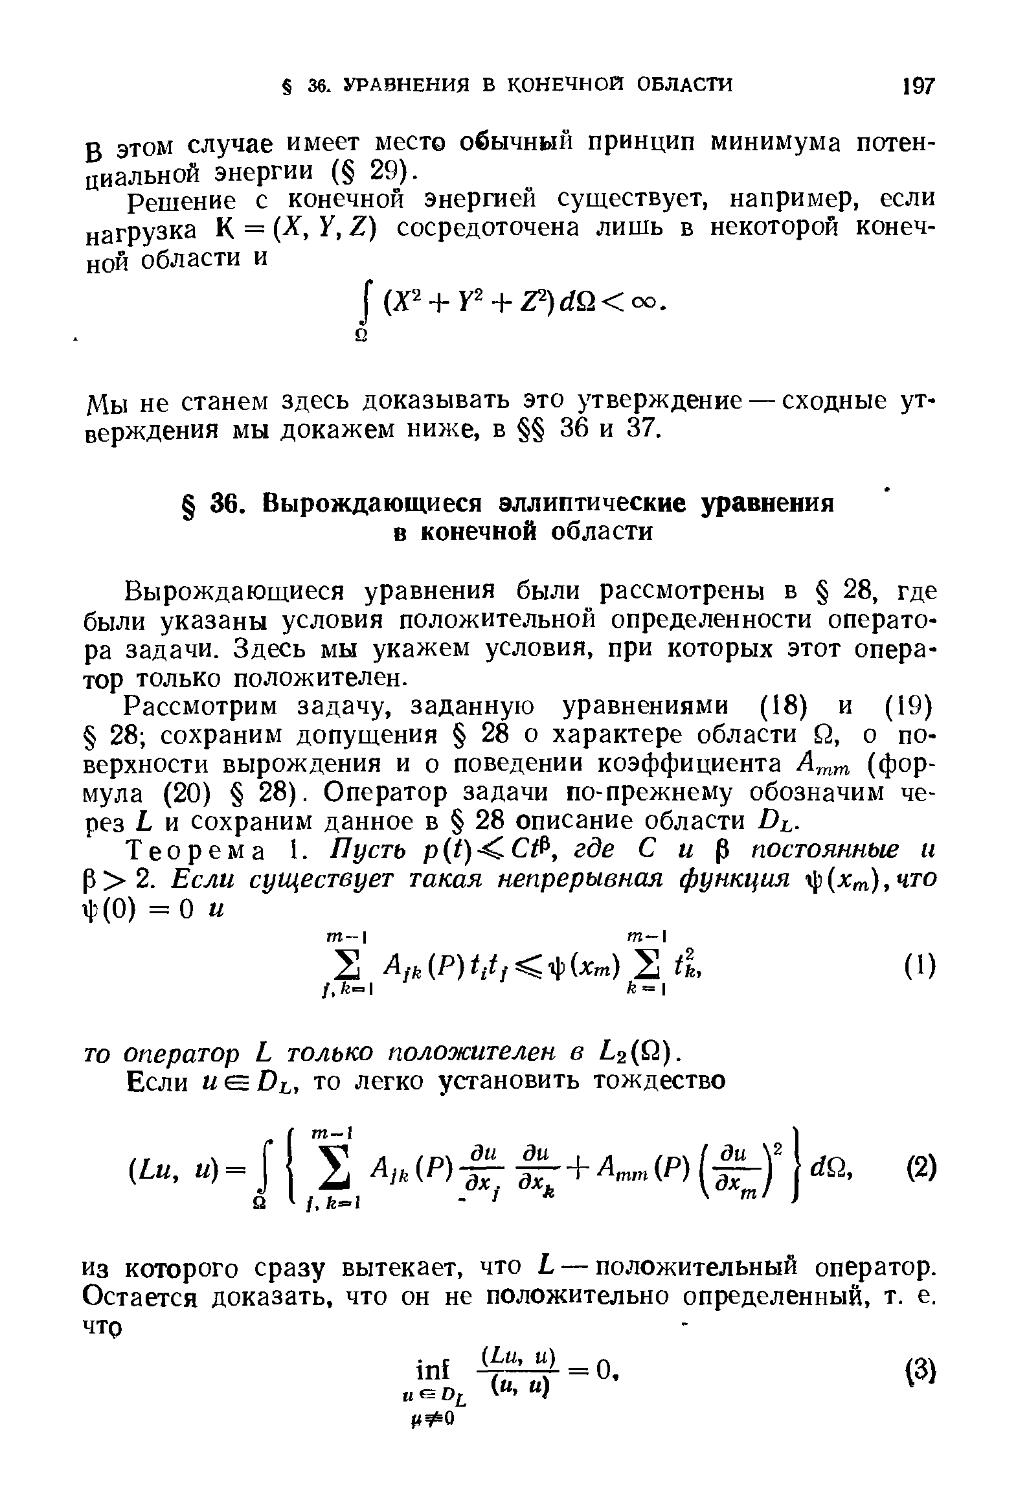 § 36. Вырождающиеся эллиптические уравнения в конечной области